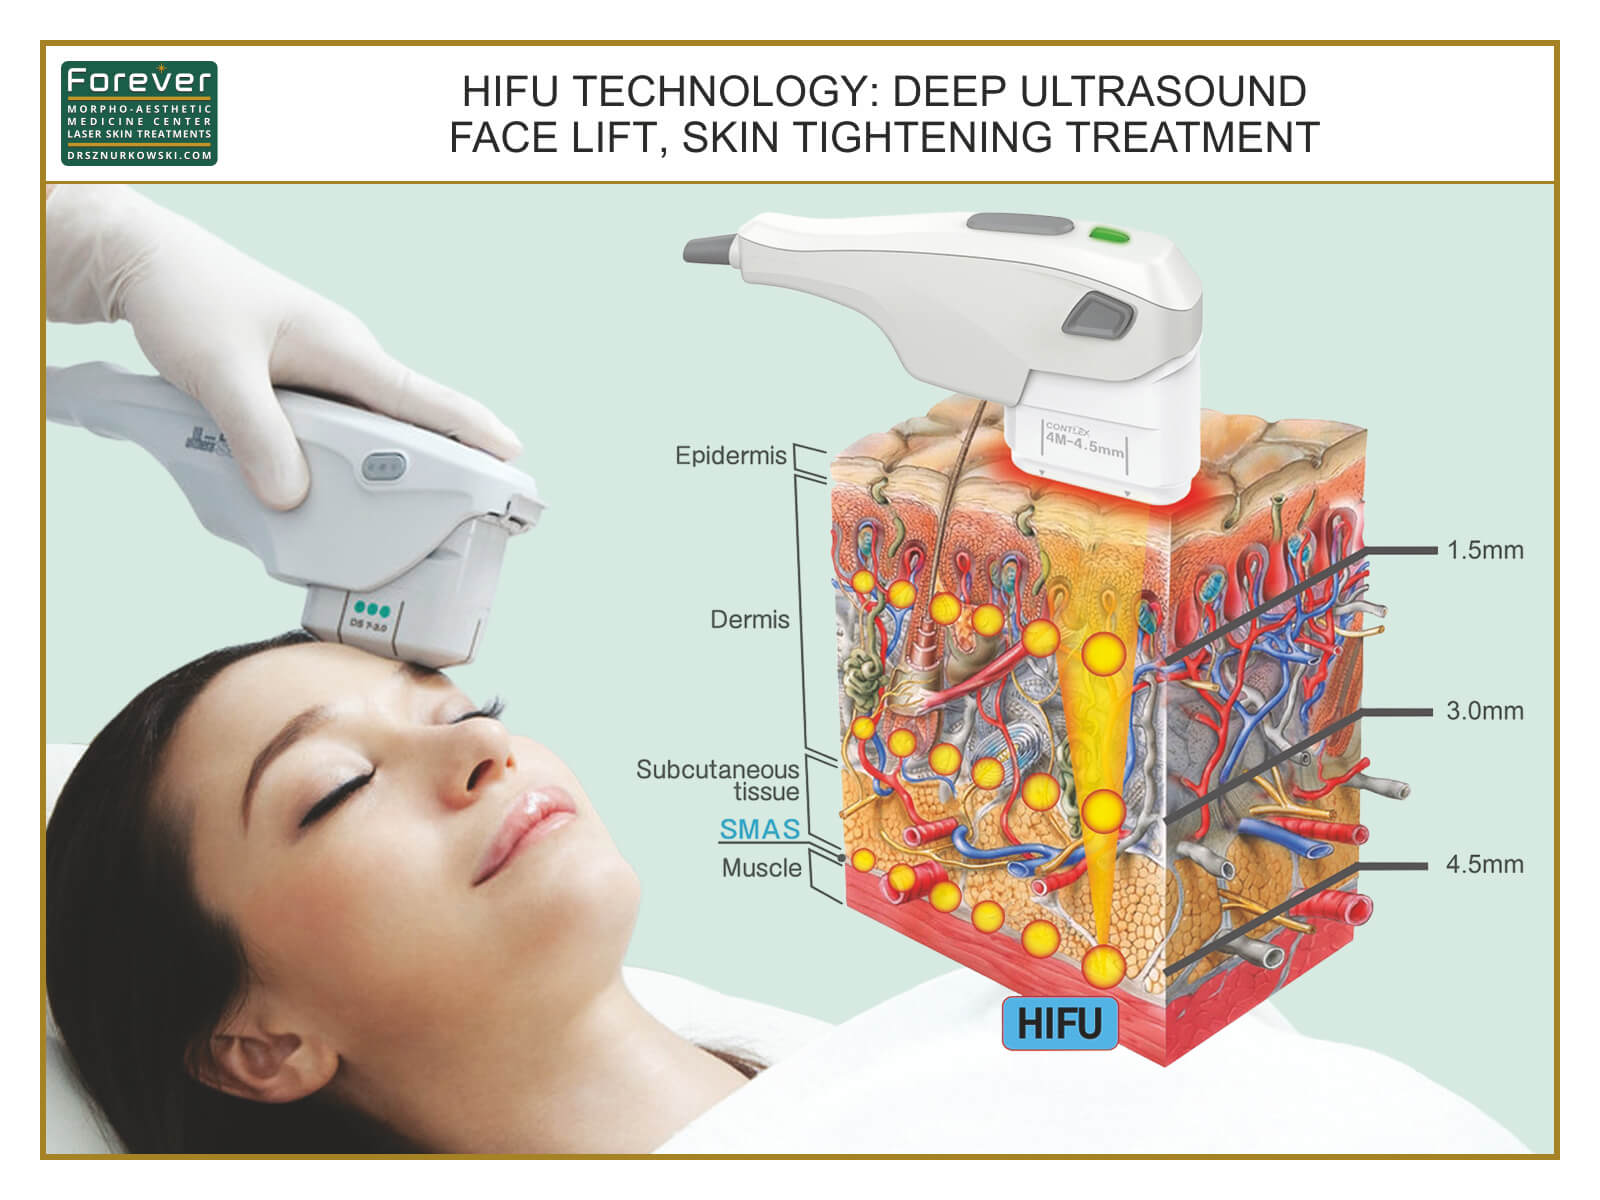 HIFU Technology Deep Ultrasound Face Lift, Skin Tightening... (80x60) EN.jpg